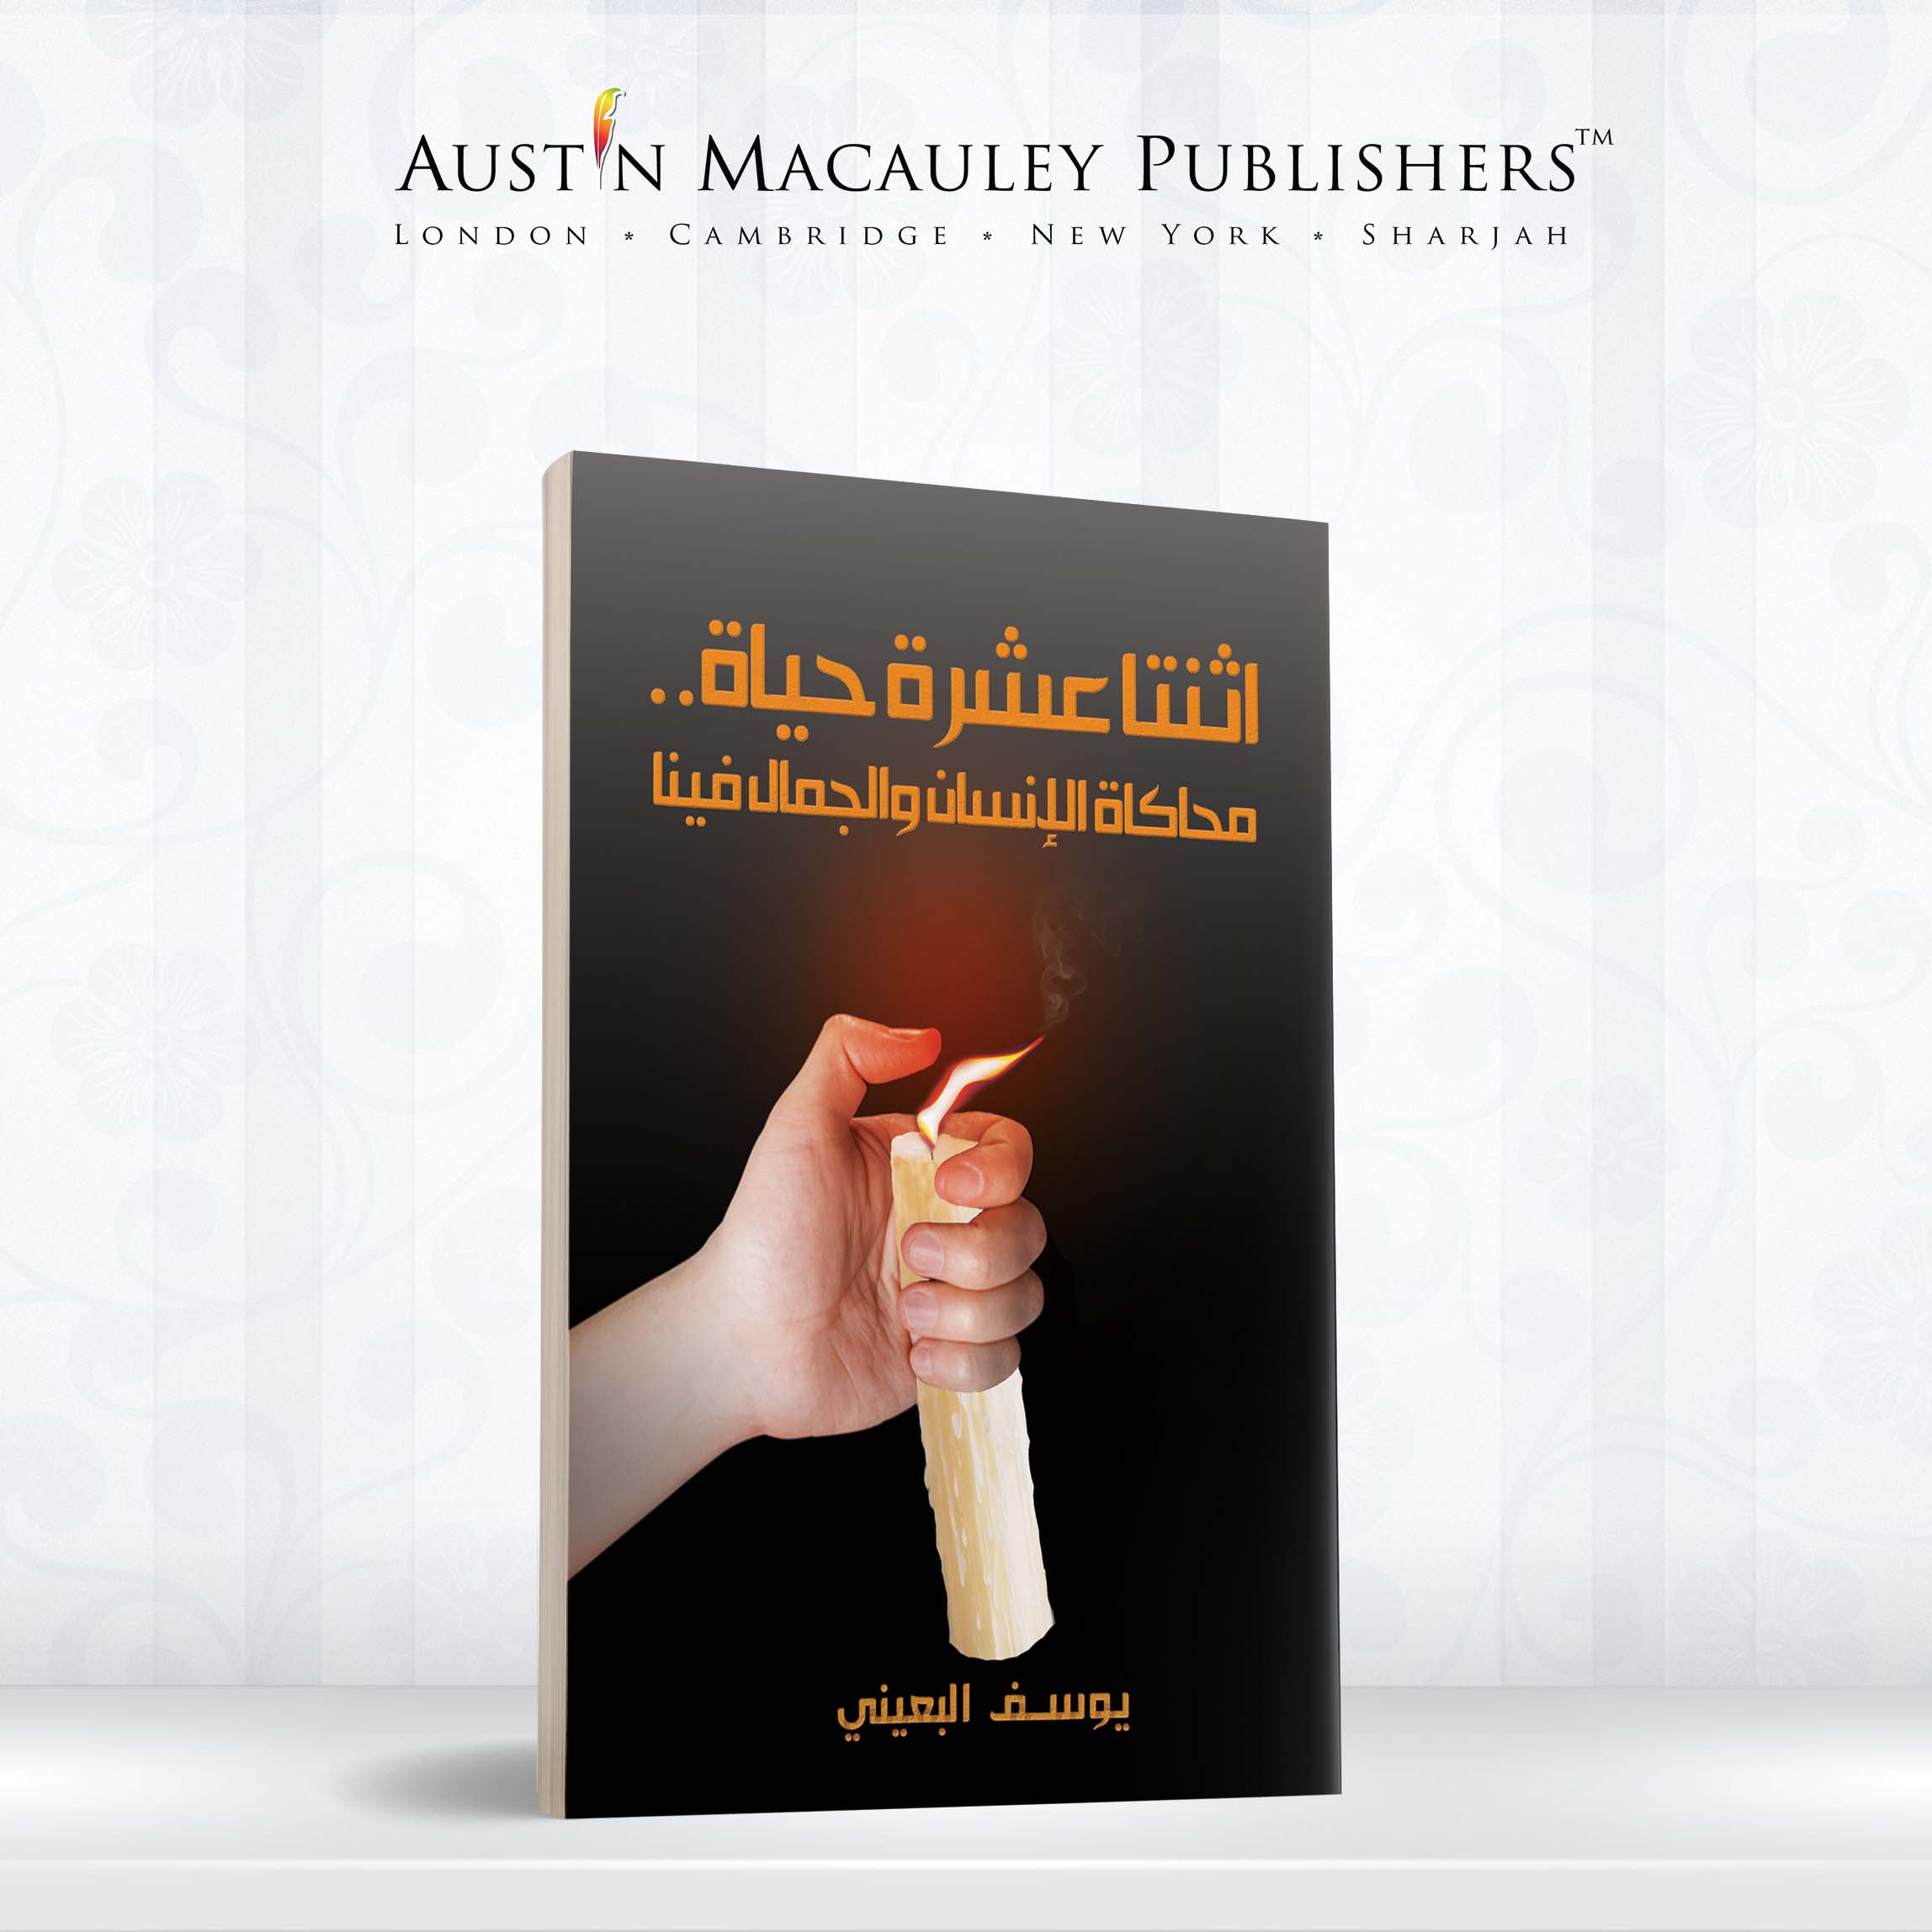 مدح كتاب المؤلف يوسف البعيني للمساعدة الذاتية في إذاعة صوت العرب